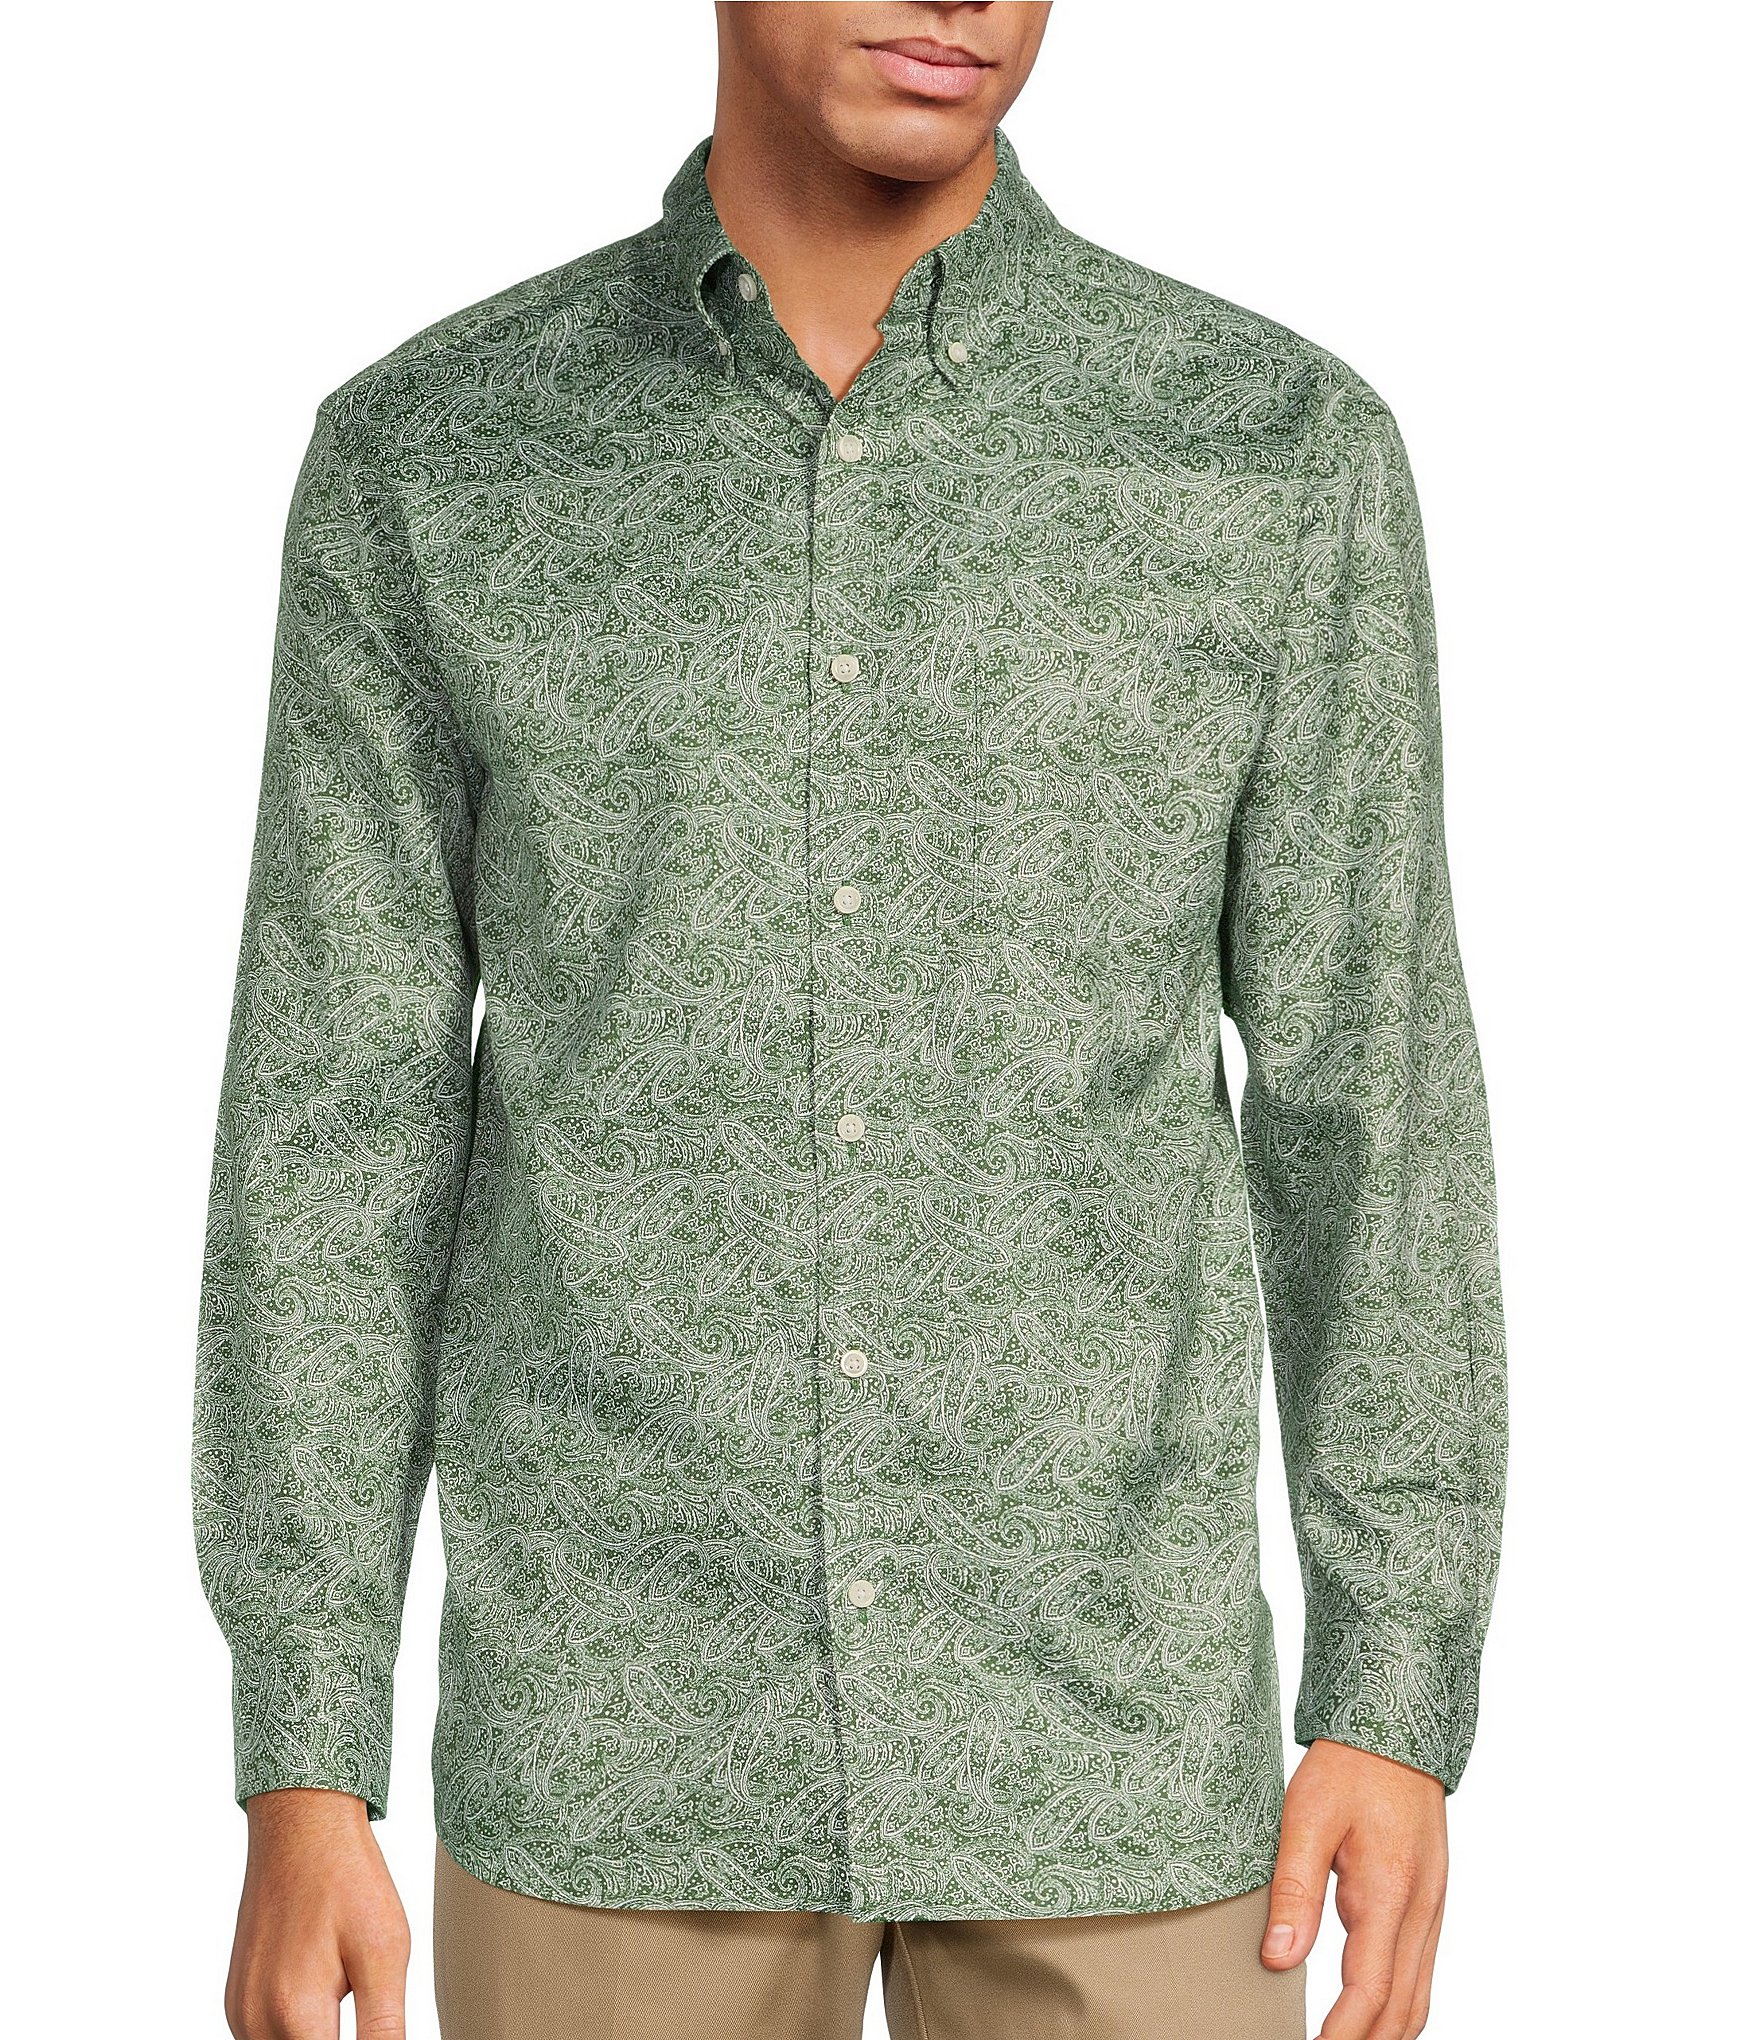 Paisley Short Sleeve Shirt, West Coast Clothing Men